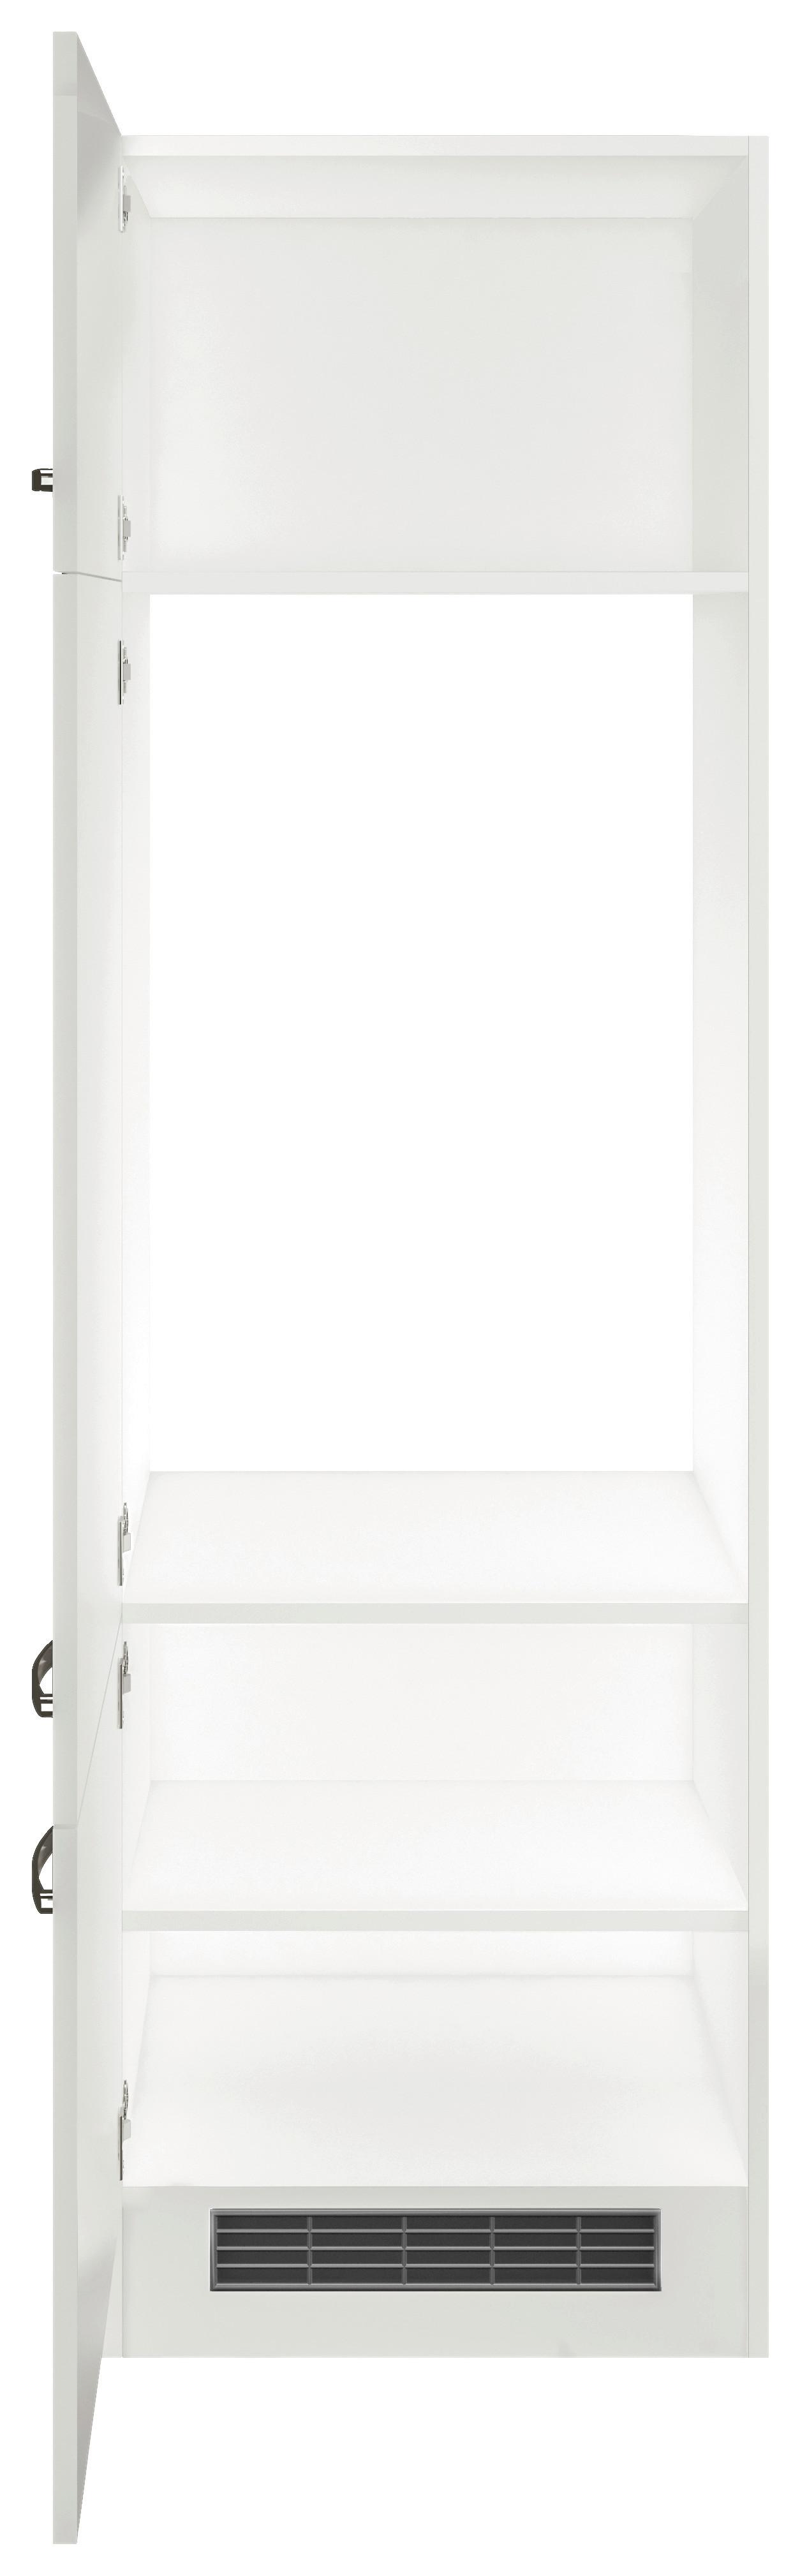 Skříňka Na Spotřebiče Alba  Git60 - bílá/barvy nerez oceli, Moderní, kov/kompozitní dřevo (60/200/57cm)